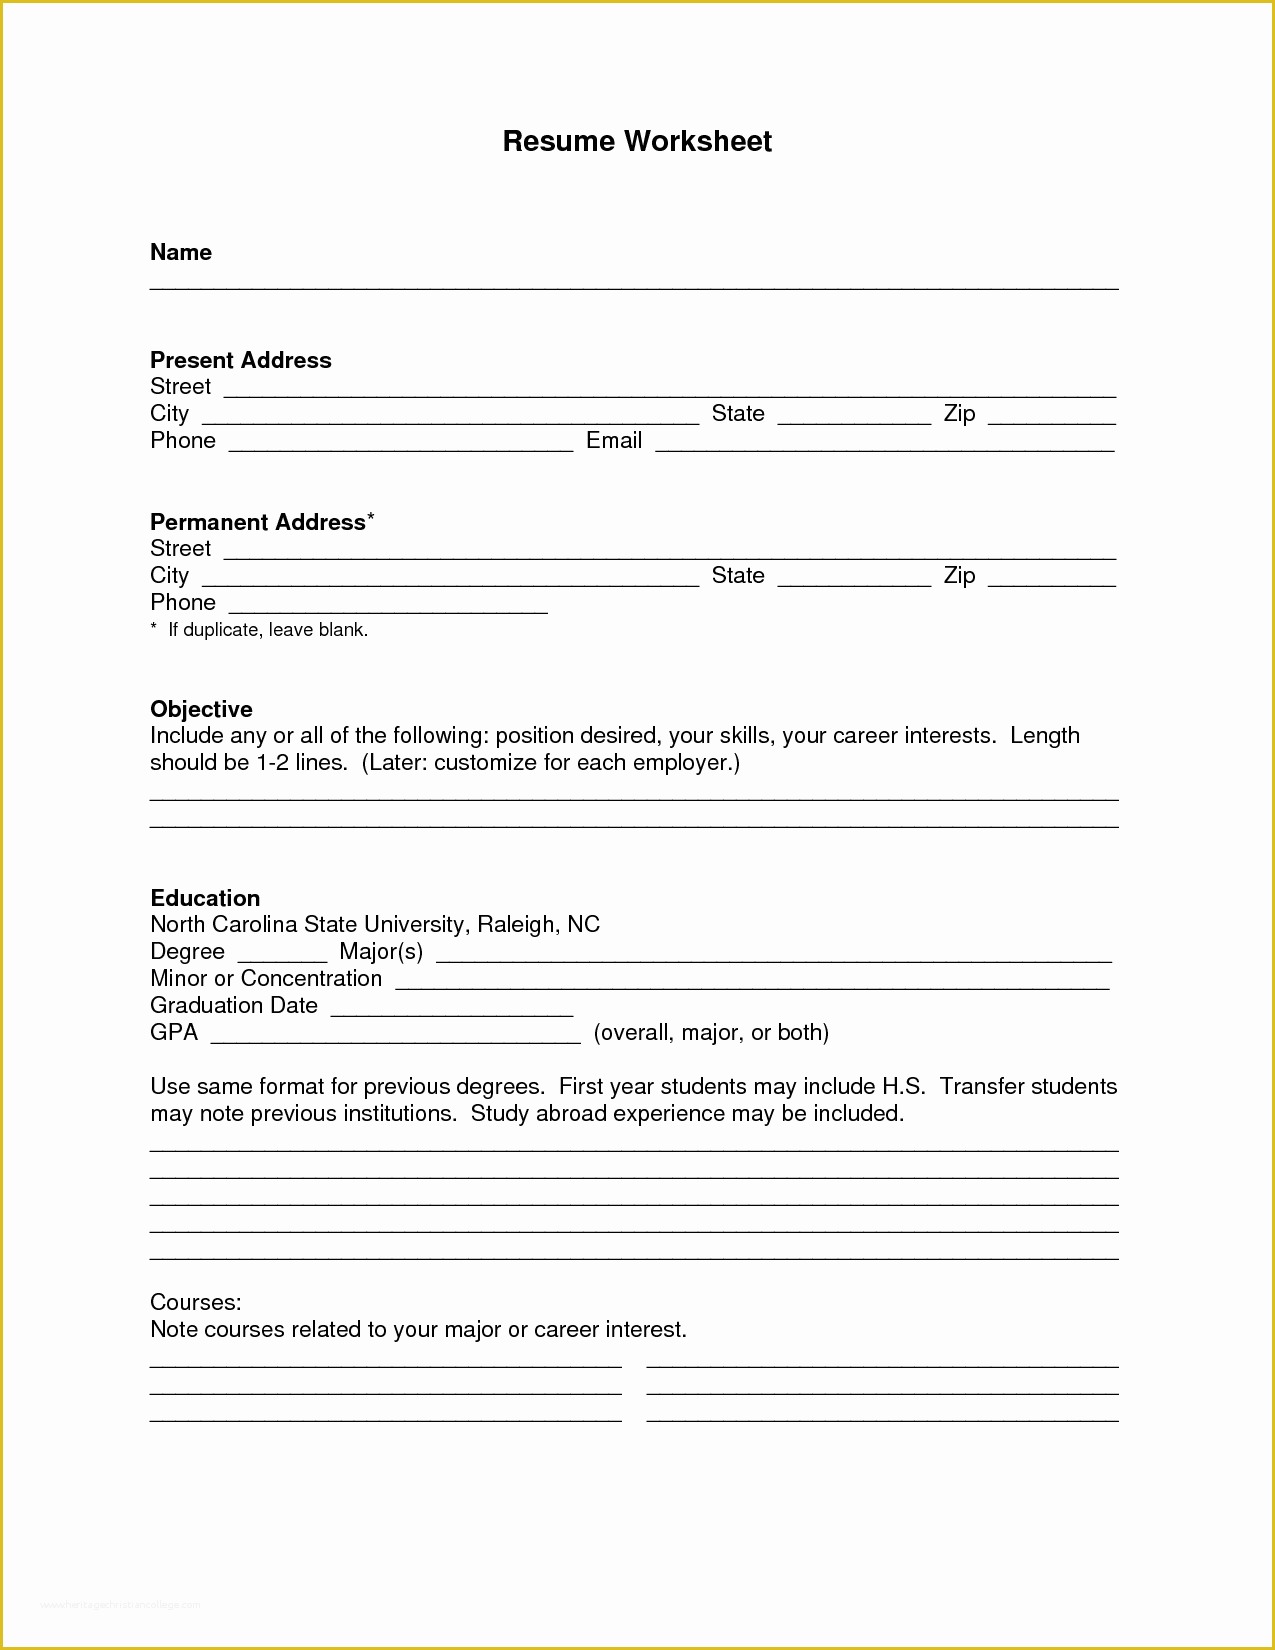 Free Blank Resume Templates Printable Of Pin Oleh Jobresume Di Resume Career Termplate Free